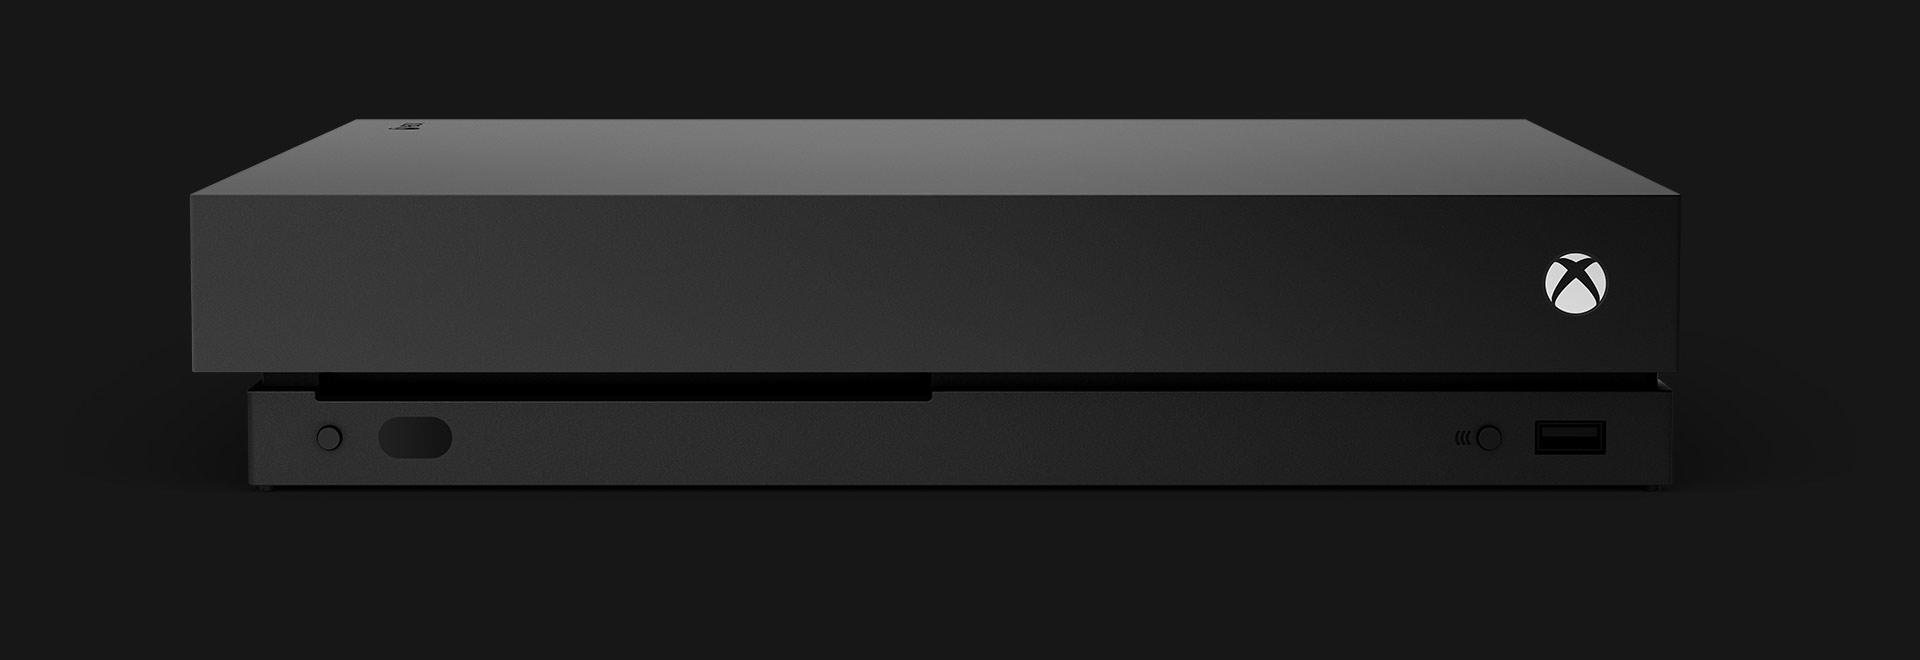 Μπροστινή όψη κονσόλας Xbox One X.